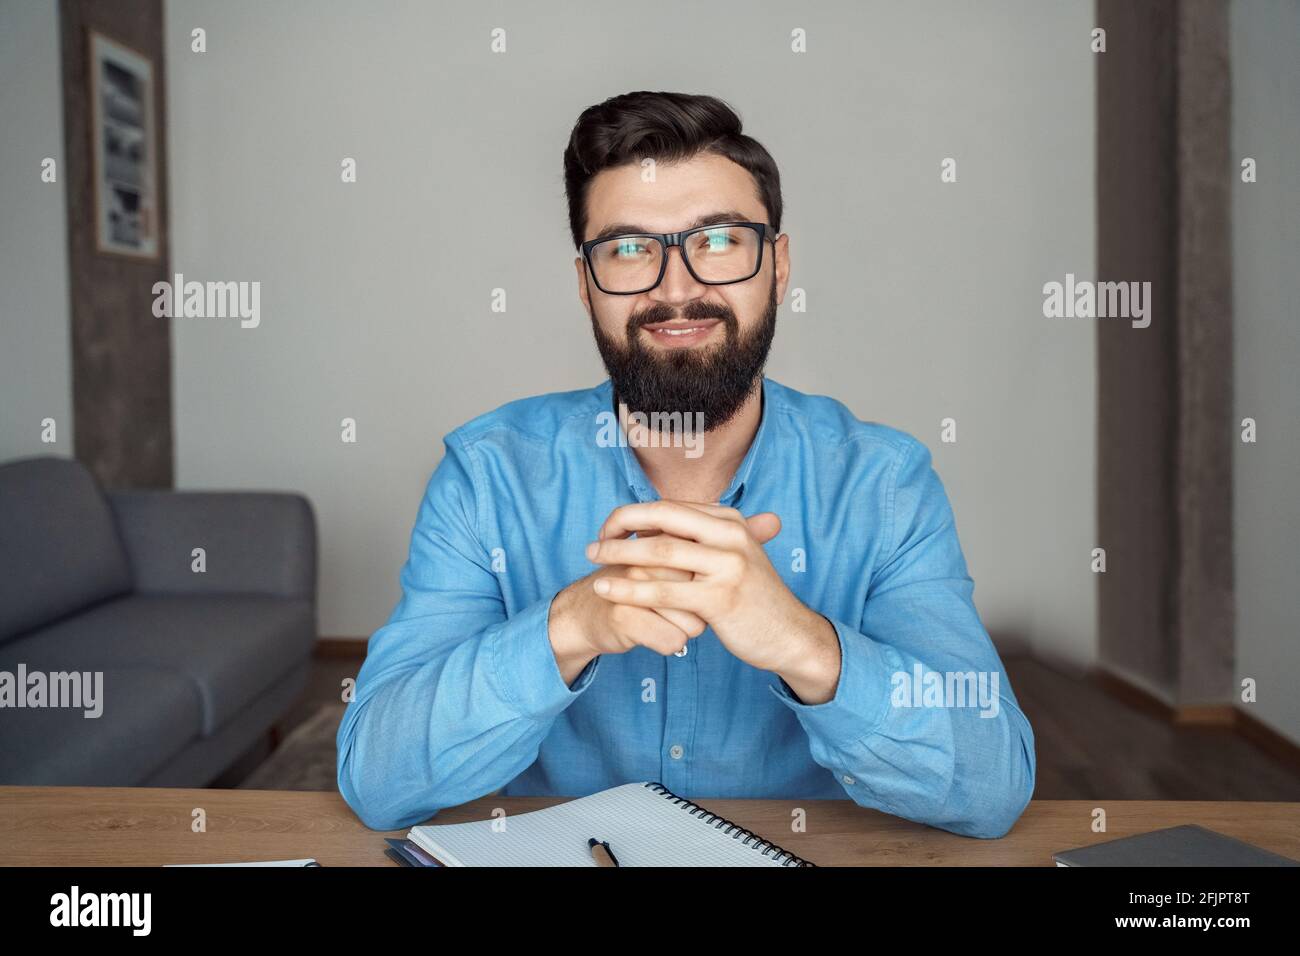 Homme intelligent indépendant en lunettes regardant la caméra pendant qu'il est assis au bureau Banque D'Images